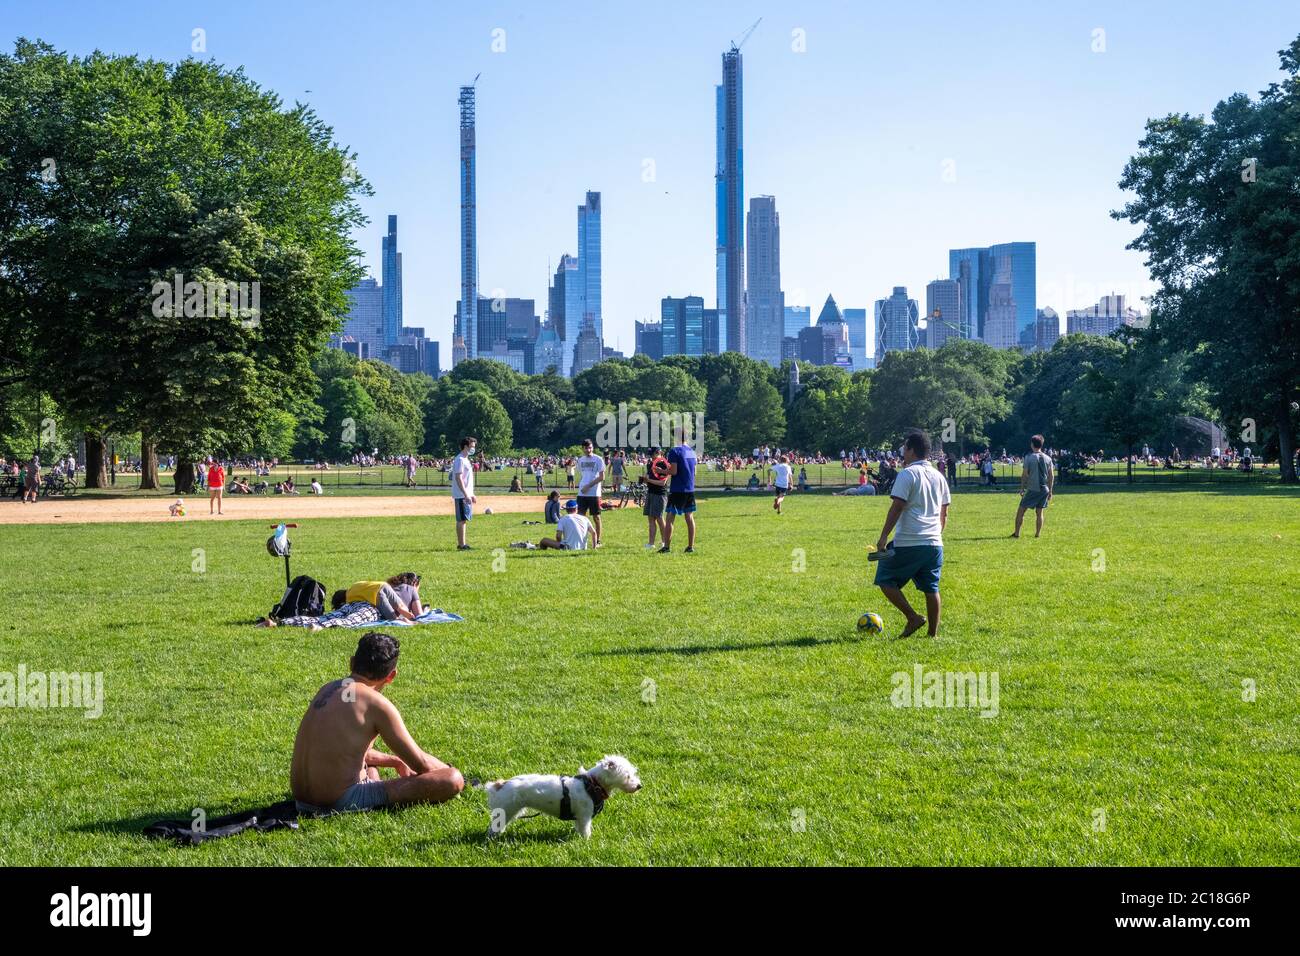 New York, USA. Juni 2020. Die Menschen genießen einen warmen Sonntag im Great Lawn des Central Parks, während die Stadt begann, die Einschränkungen durch den Ausbruch des Coronavirus zu entspannen. Quelle: Enrique Shore/Alamy Live News Stockfoto